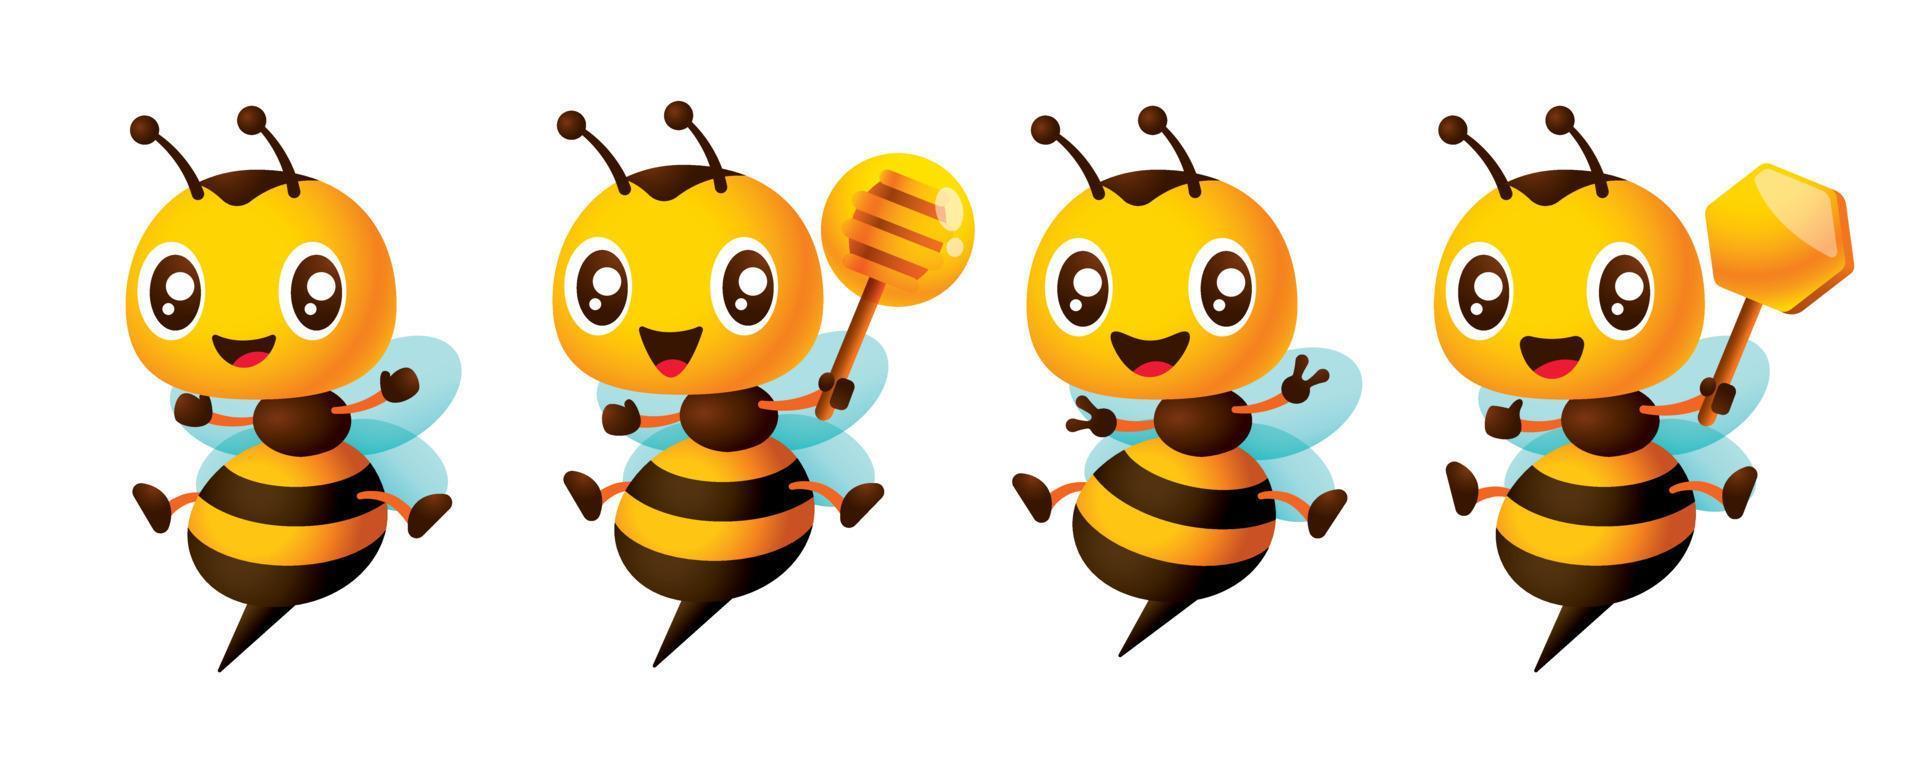 mascotte d'abeille mignonne de dessin animé avec différentes poses, bras ouverts d'abeille avec enthousiasme, signes de main de victoire, tenant une louche de miel et un signe de peigne de miel. illustration de série de personnages d'abeilles de dessin animé vecteur